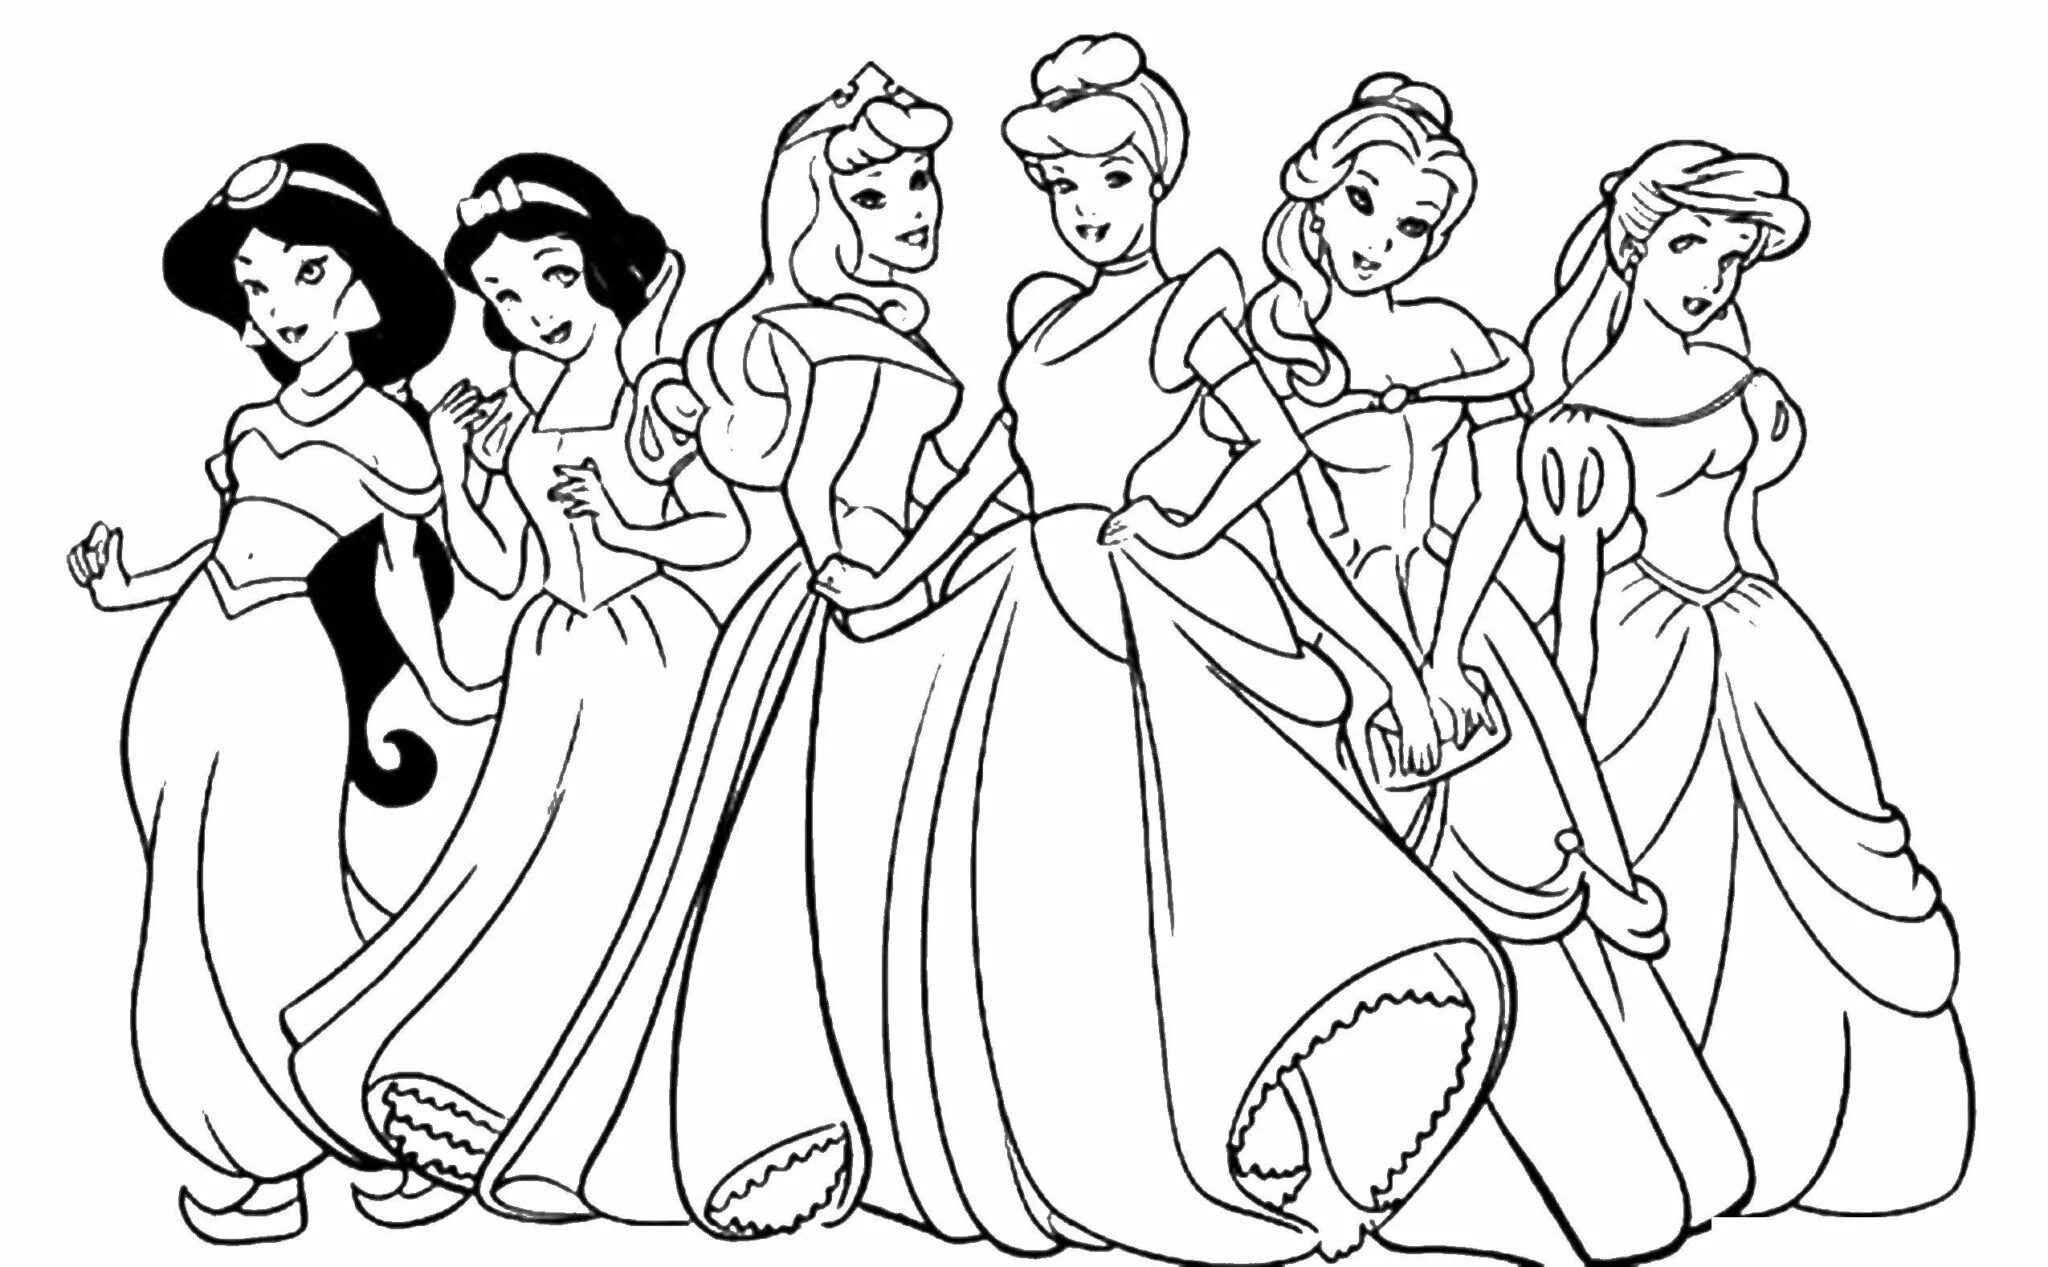 Cartoon princesses #6